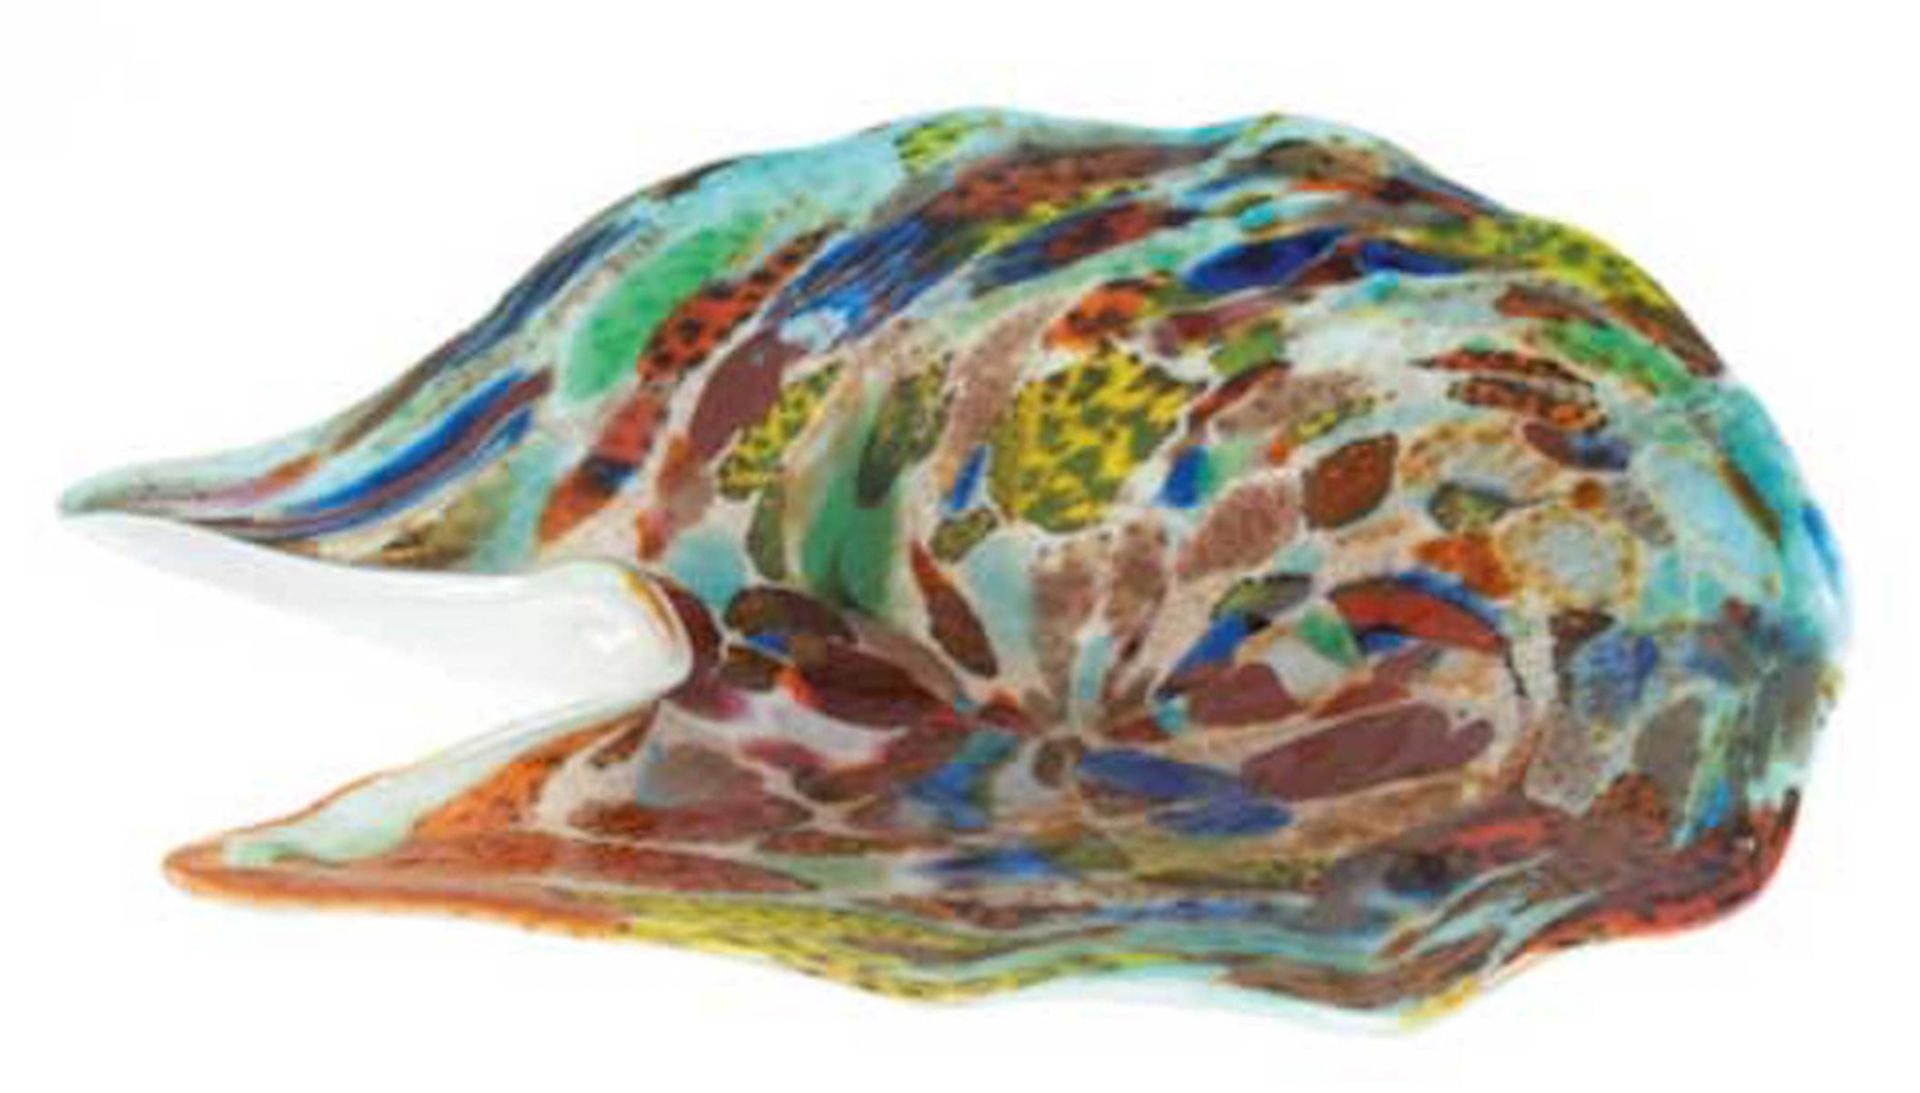 Murano-Schale, polychrome Farb- und Silbereinschmelzungen, asymmetrische Form, 5,5x21x19cm